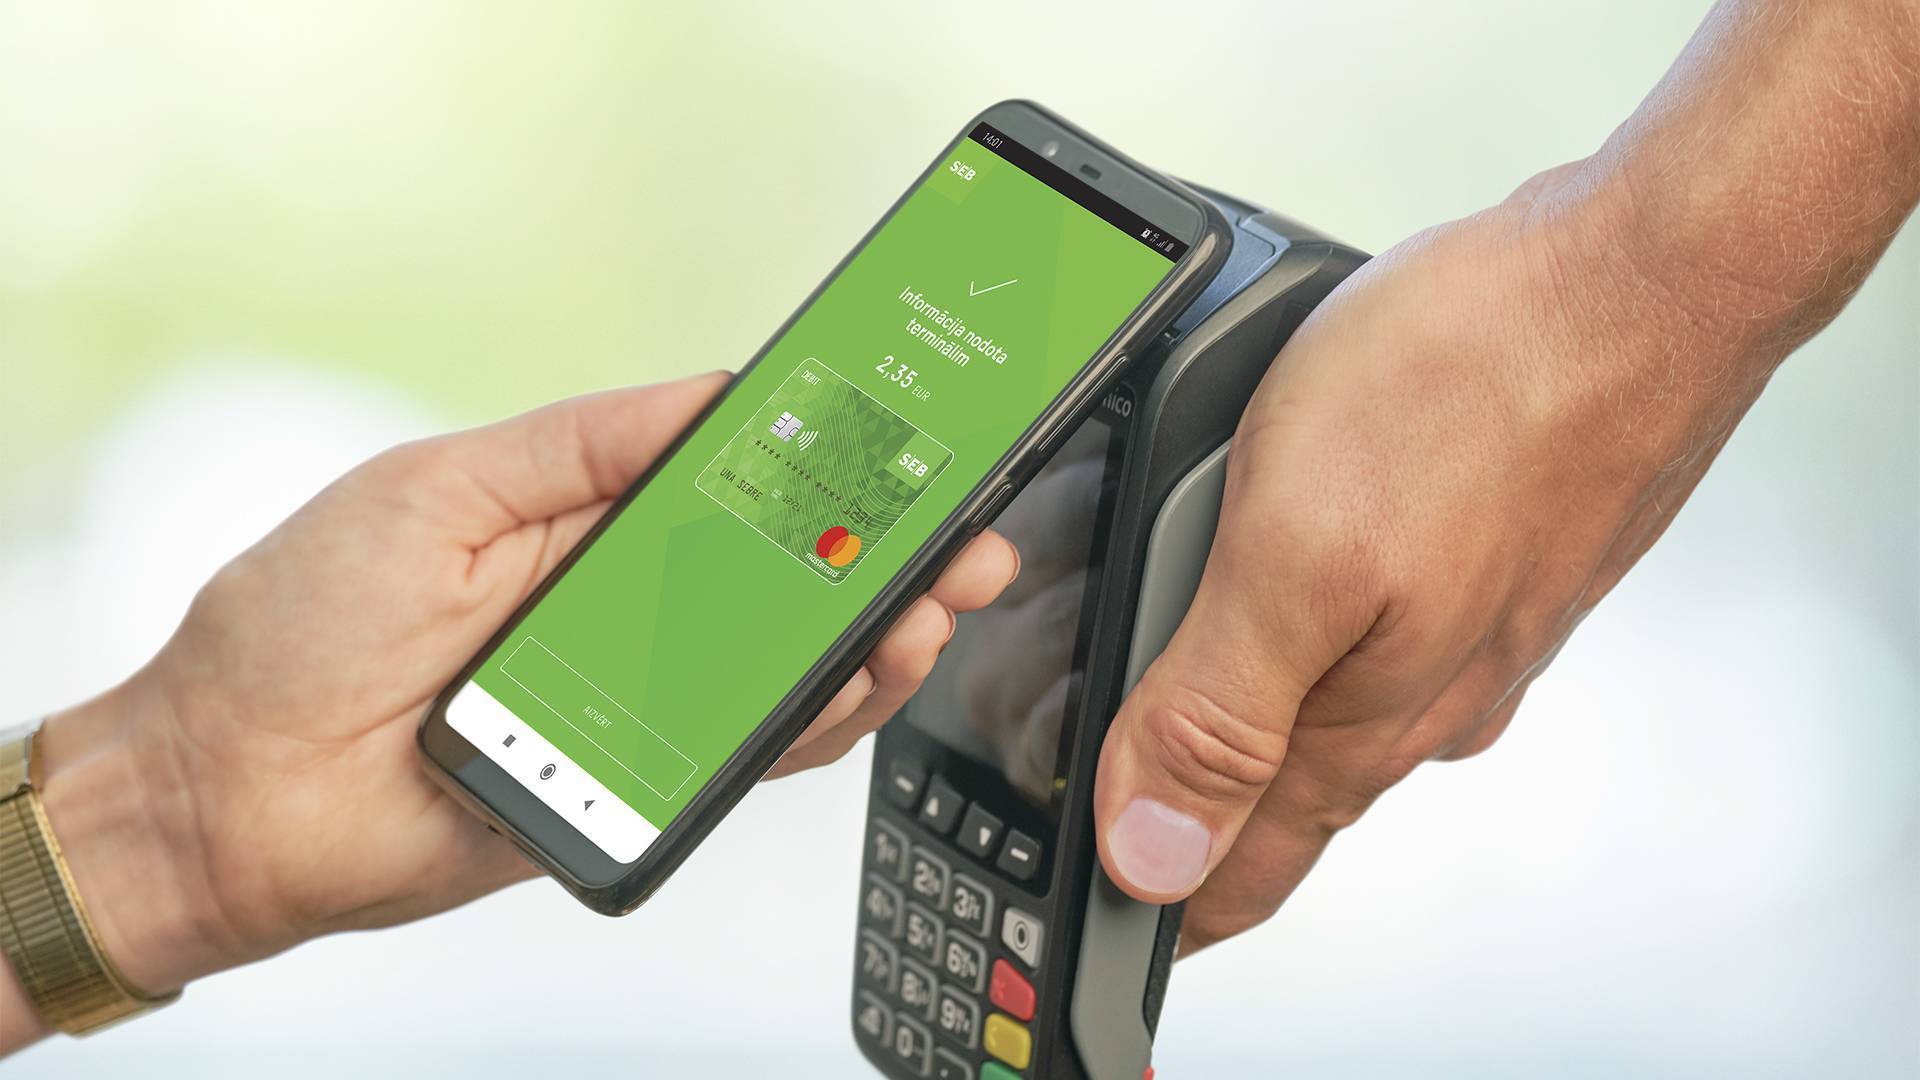 Как оплачивать покупки телефоном вместо карты сбербанка на андроид или айфон